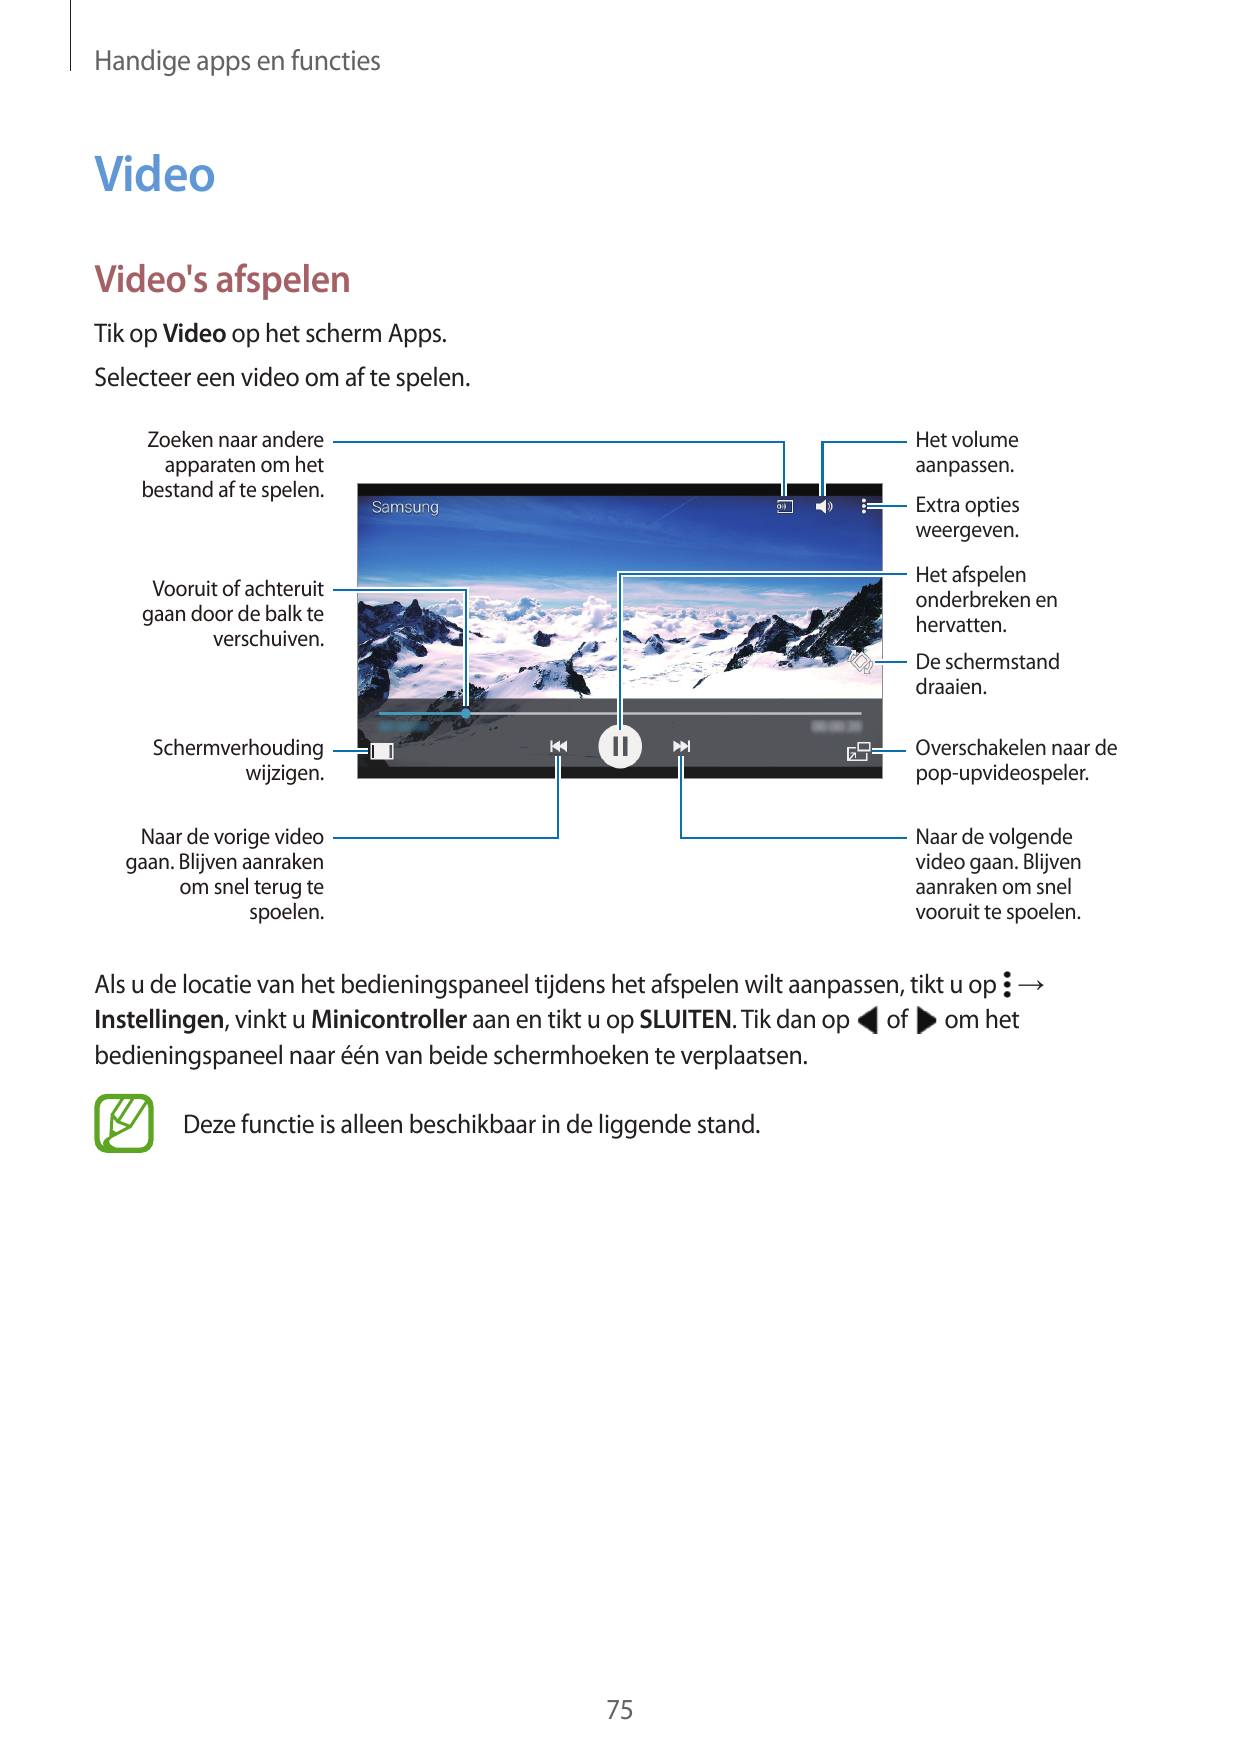 Handige apps en functiesVideoVideo's afspelenTik op Video op het scherm Apps.Selecteer een video om af te spelen.Het volumeaanpa